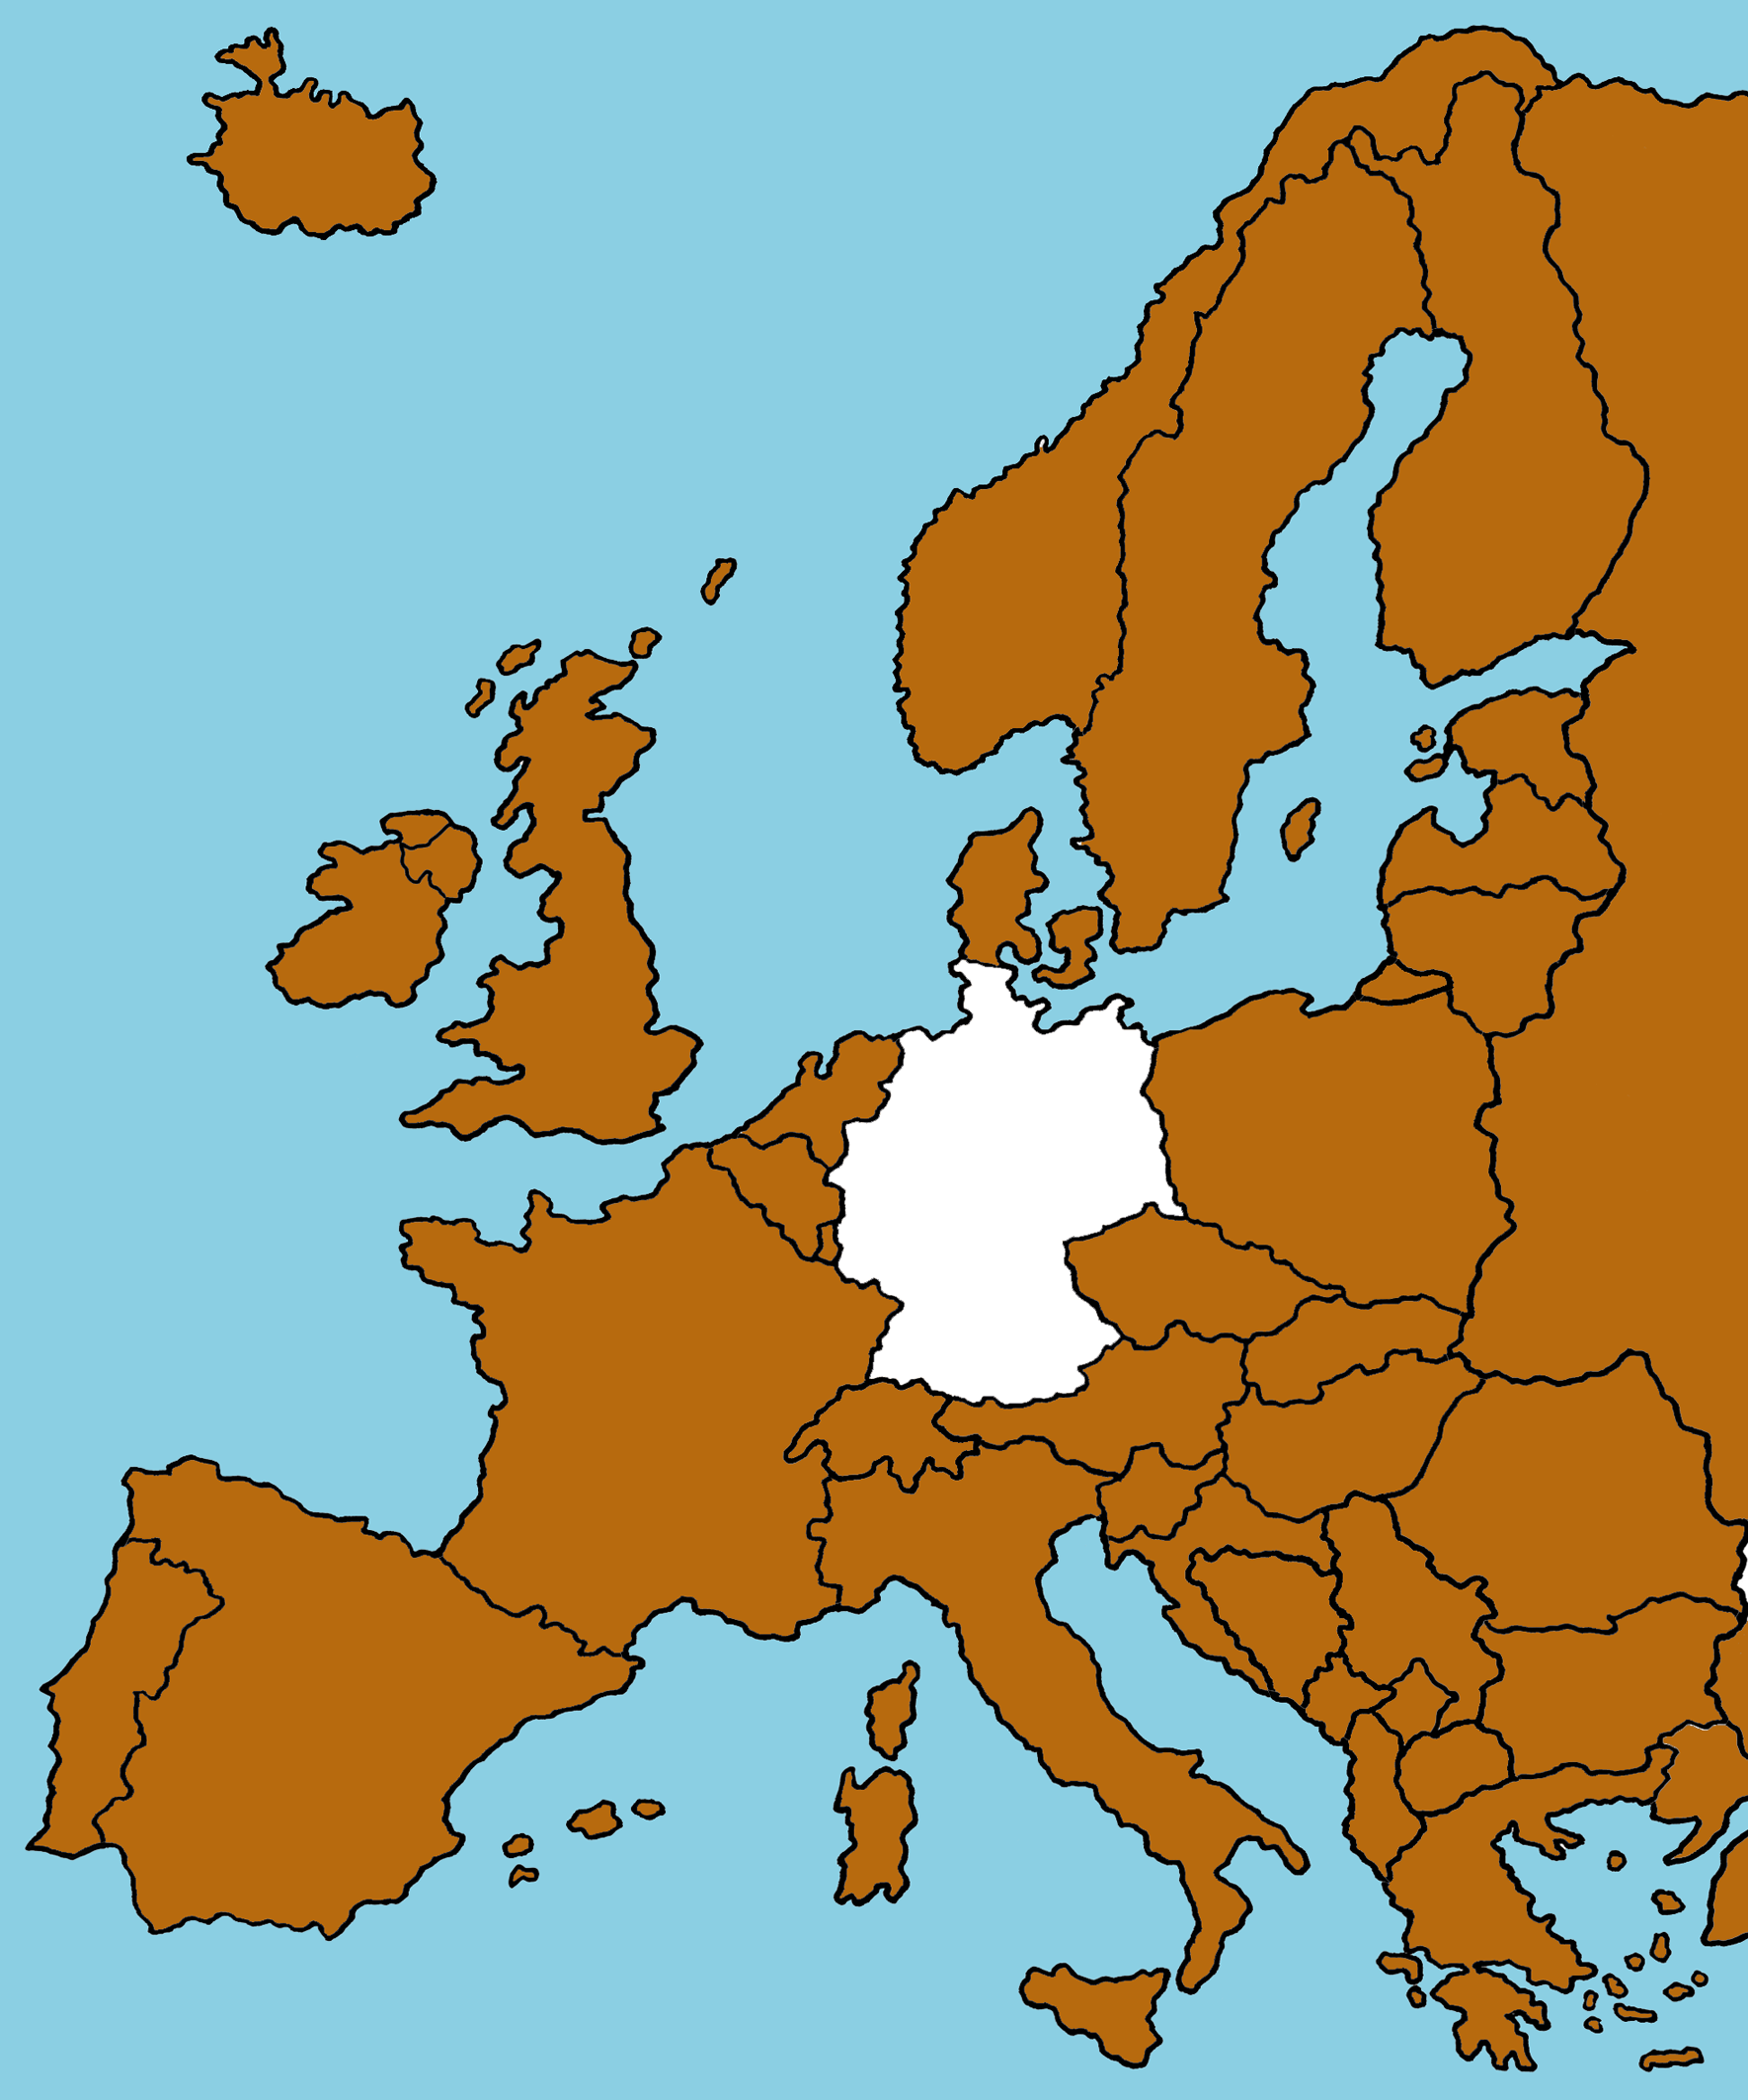 Leichte Sprache Text: Eine Karte von Europa, Deutschland ist weiß eingefärbt, die übrigen Länder ocker